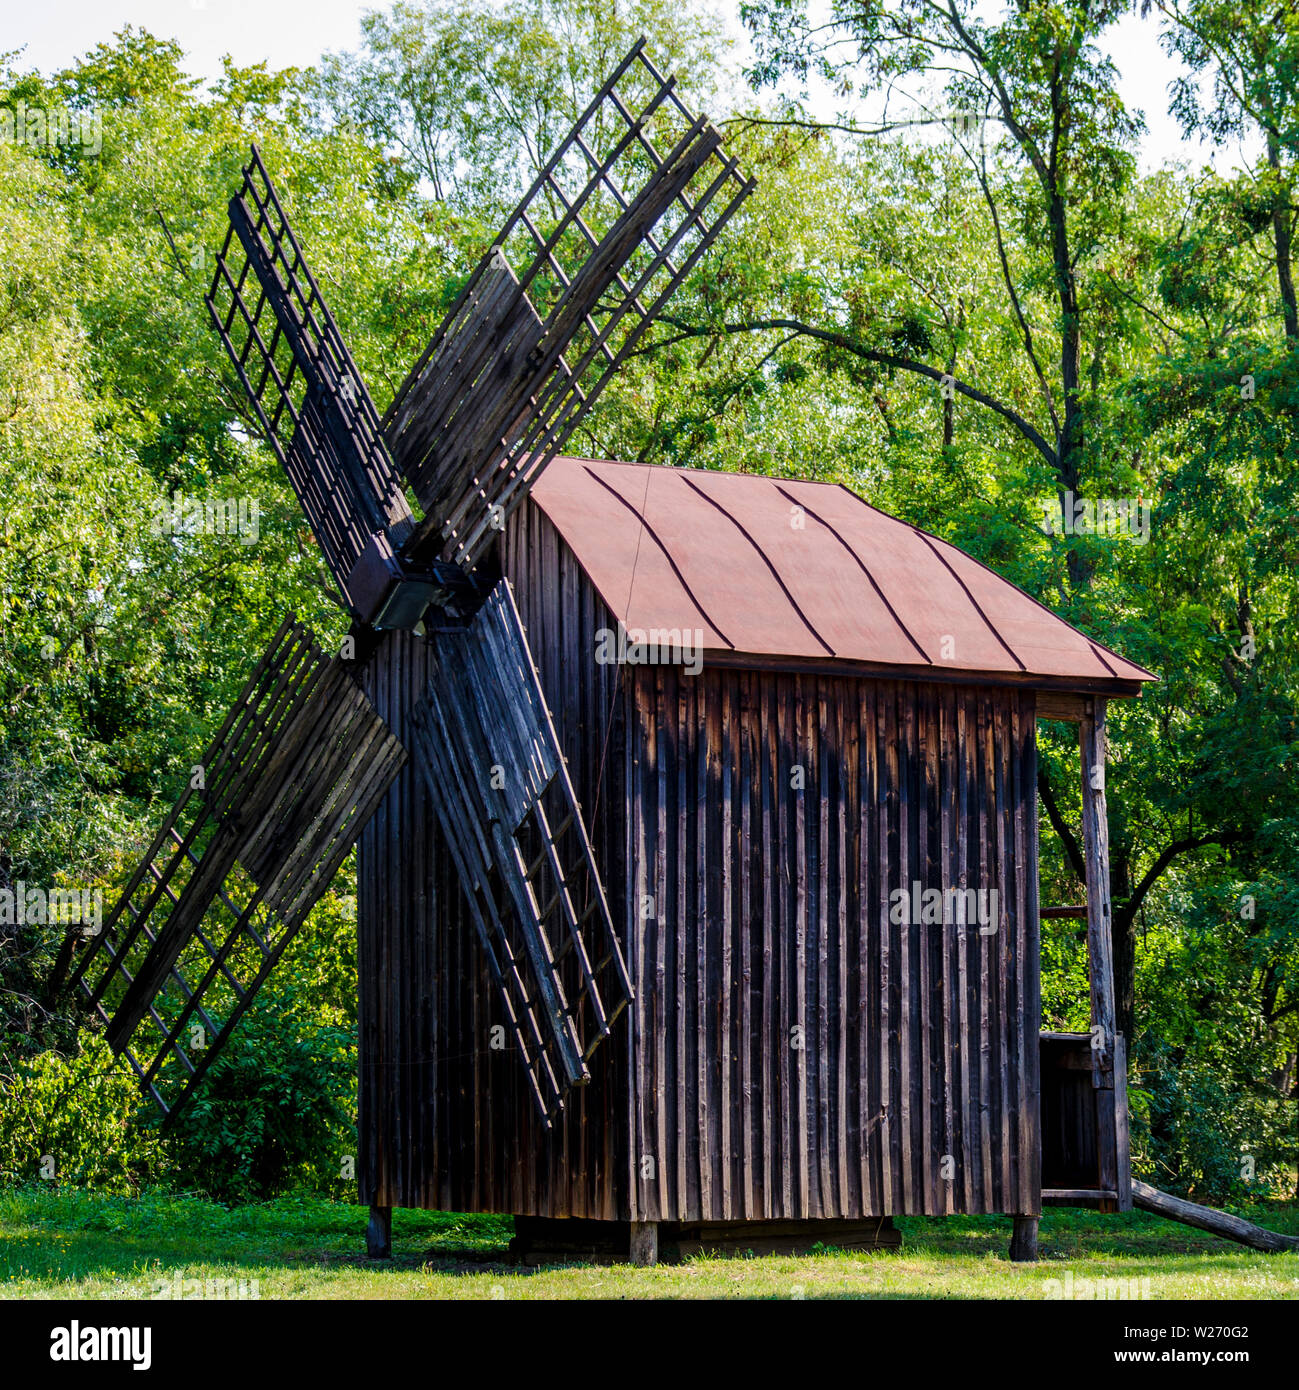 Ancien moulin pour moudre le grain en bois sur fond vert Banque D'Images